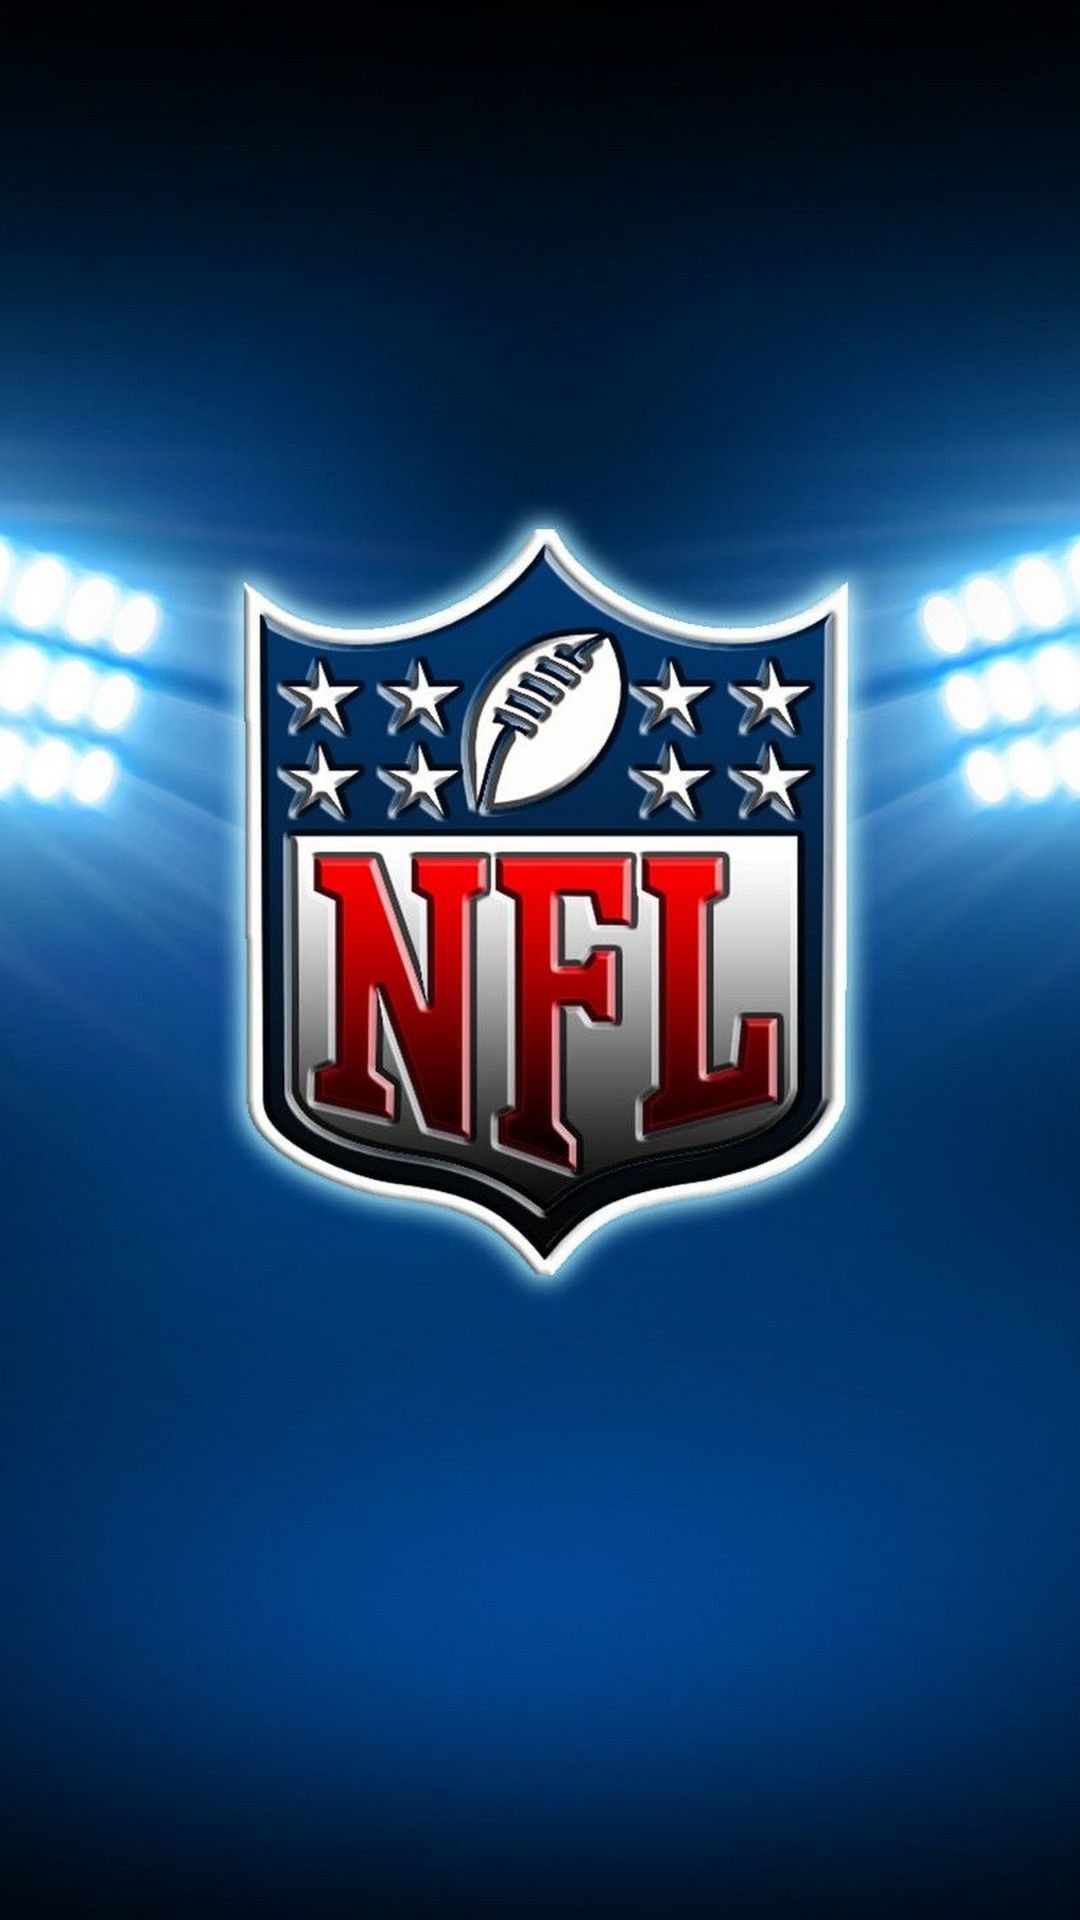 1080x1920 NFL iPhone 6 Wallpaper | Best NFL Wallpapers